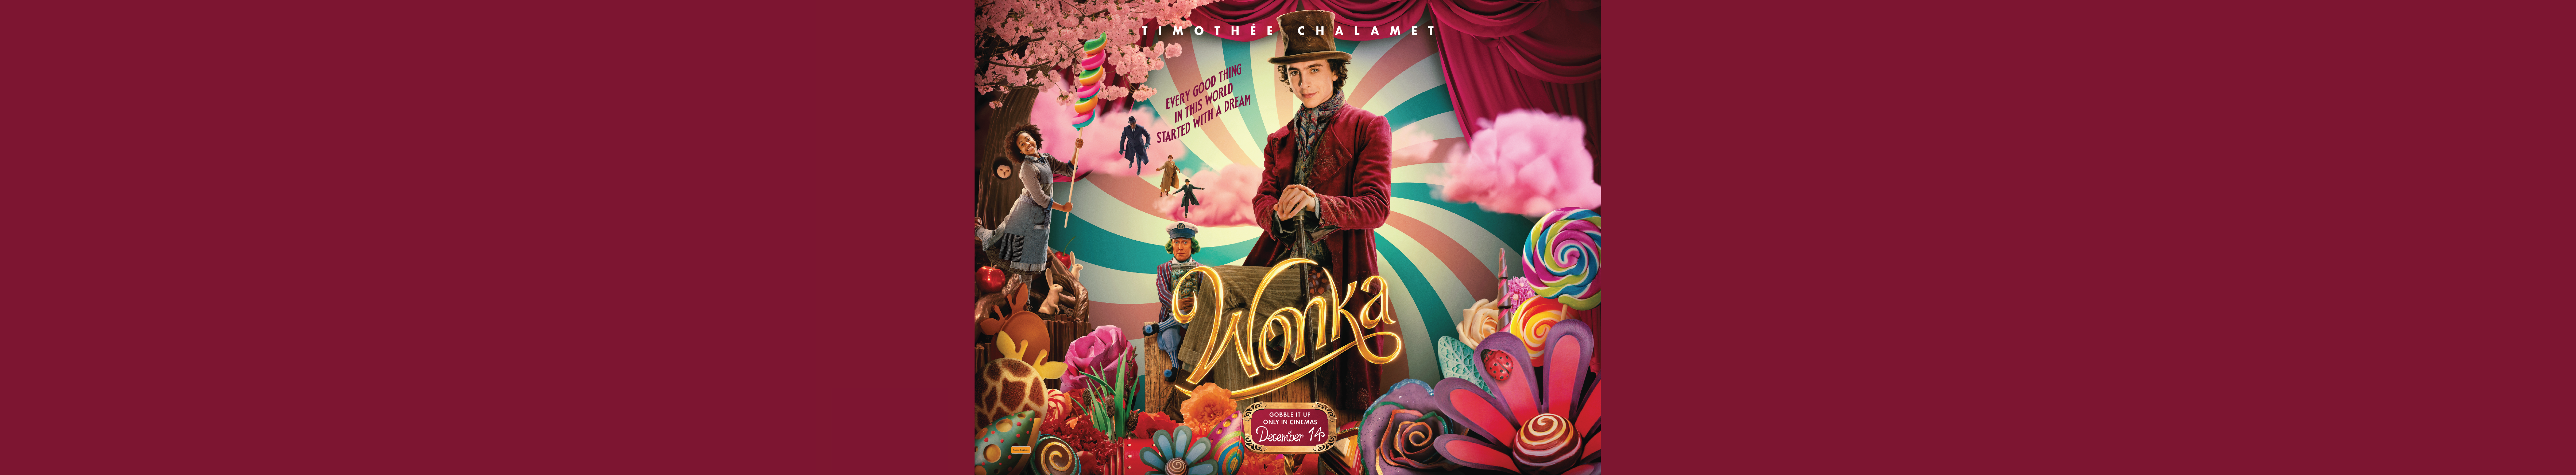 Wonka 01